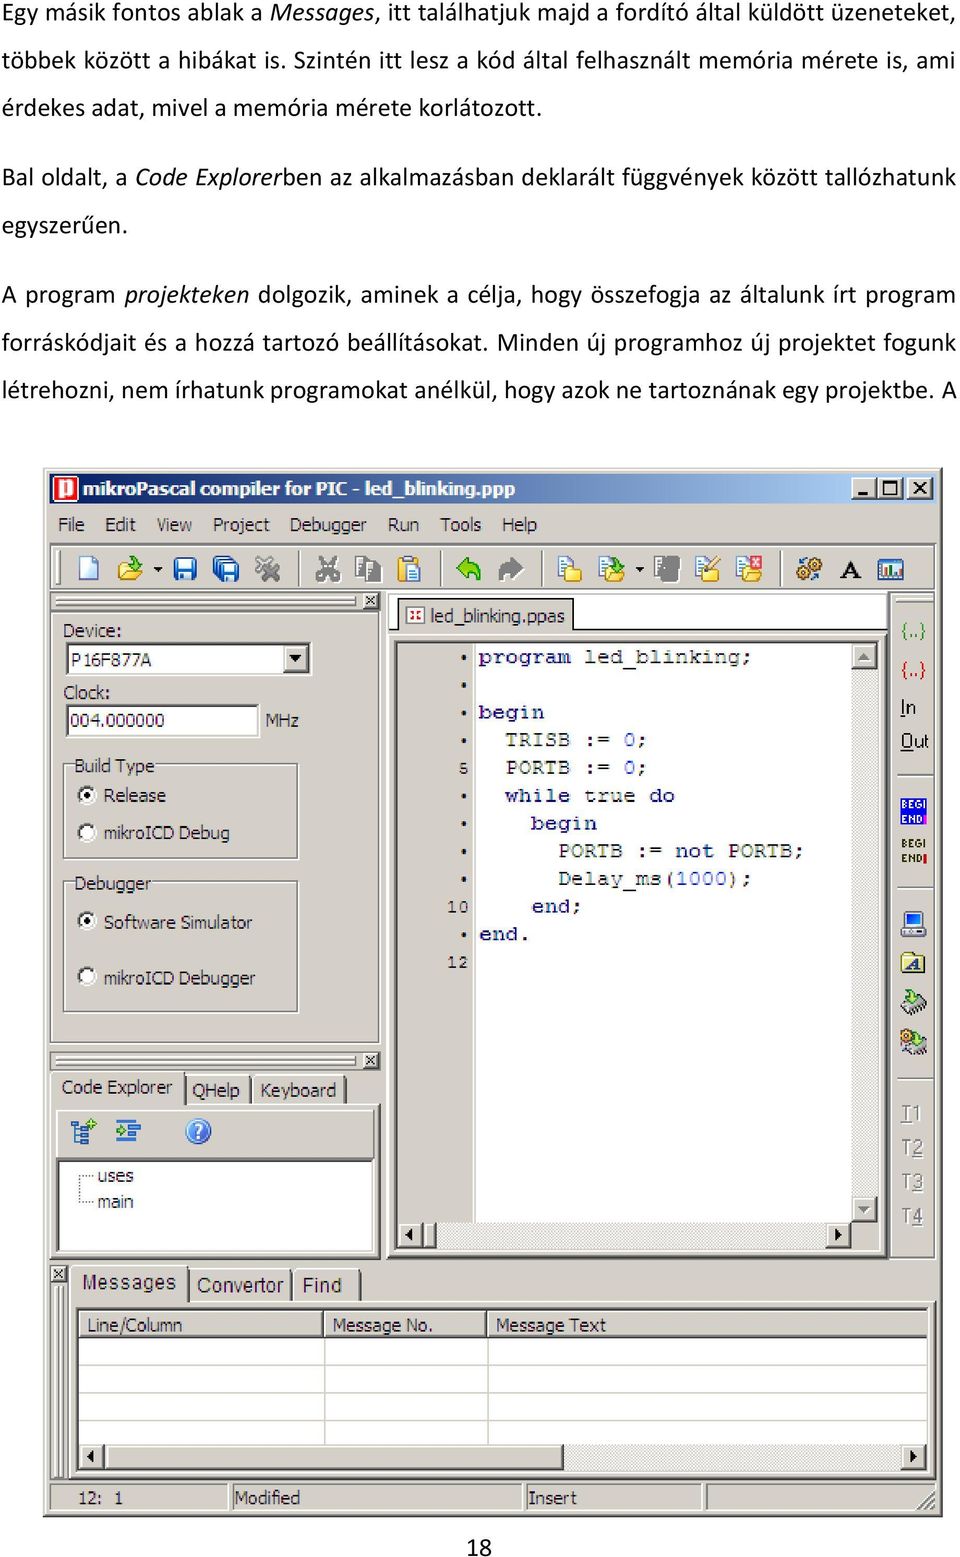 Bal oldalt, a Code Explorerben az alkalmazásban deklarált függvények között tallózhatunk egyszerűen.